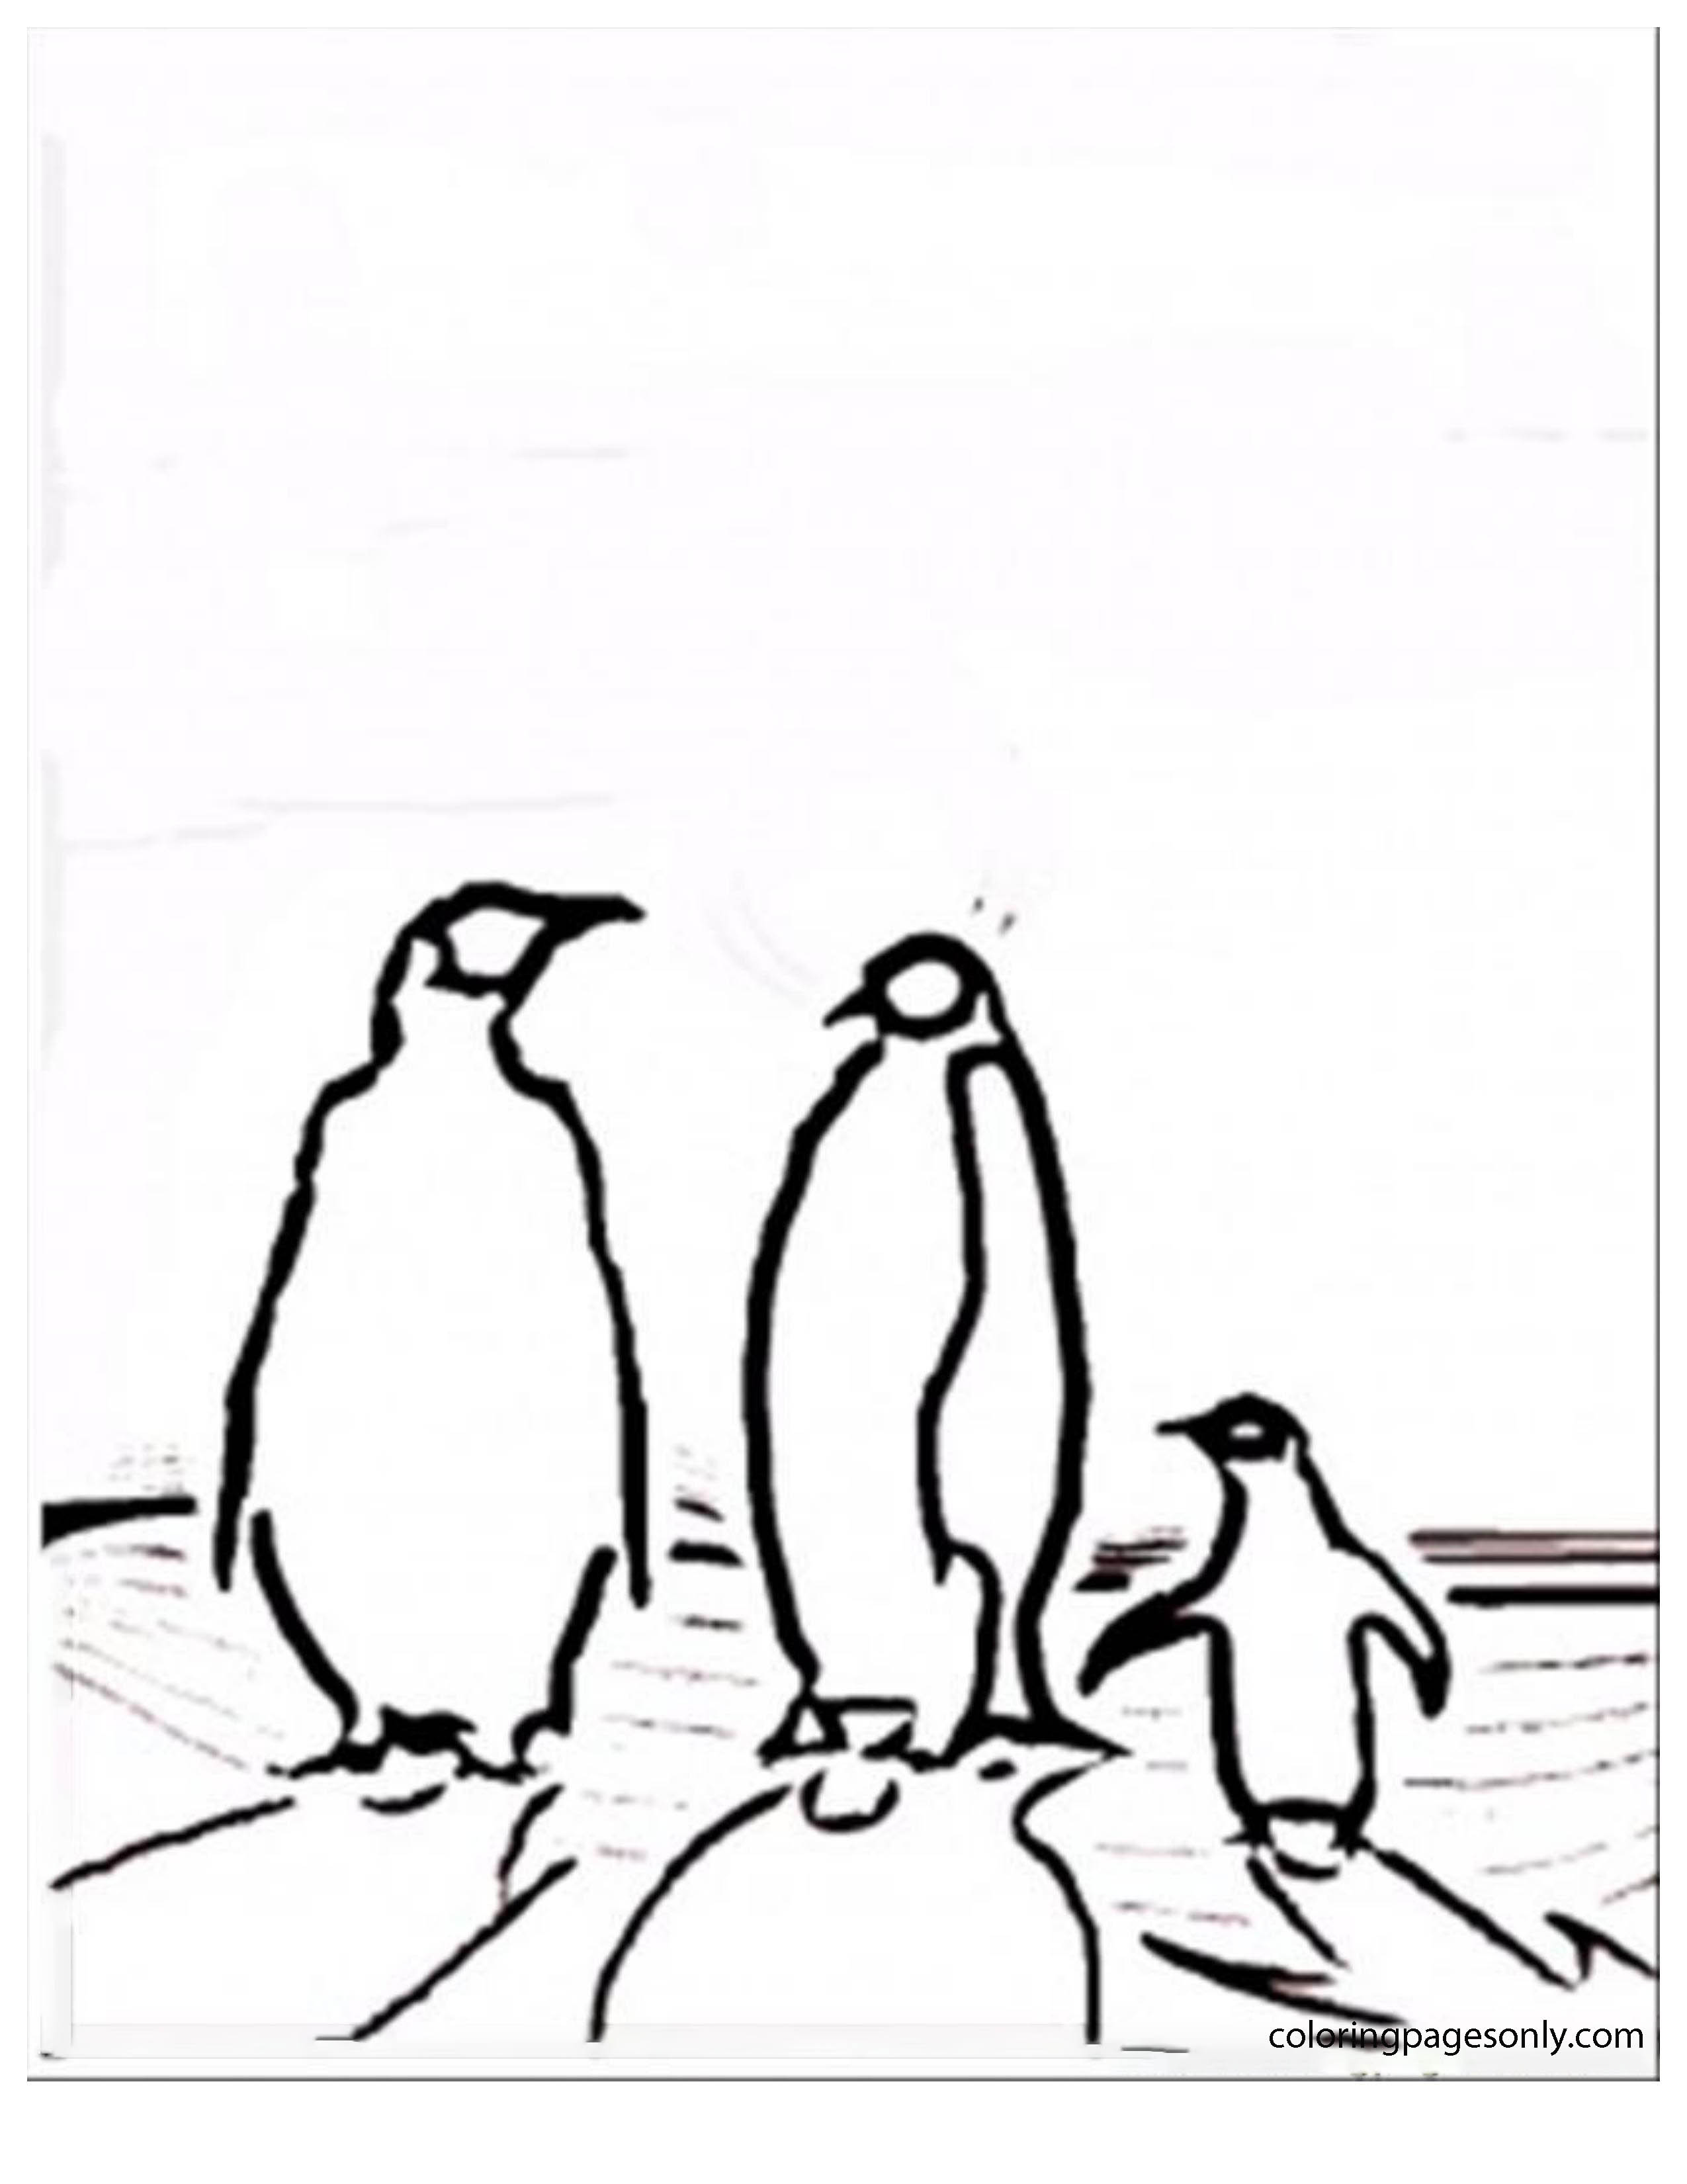 Familia de pingüinos de los polos norte y sur.